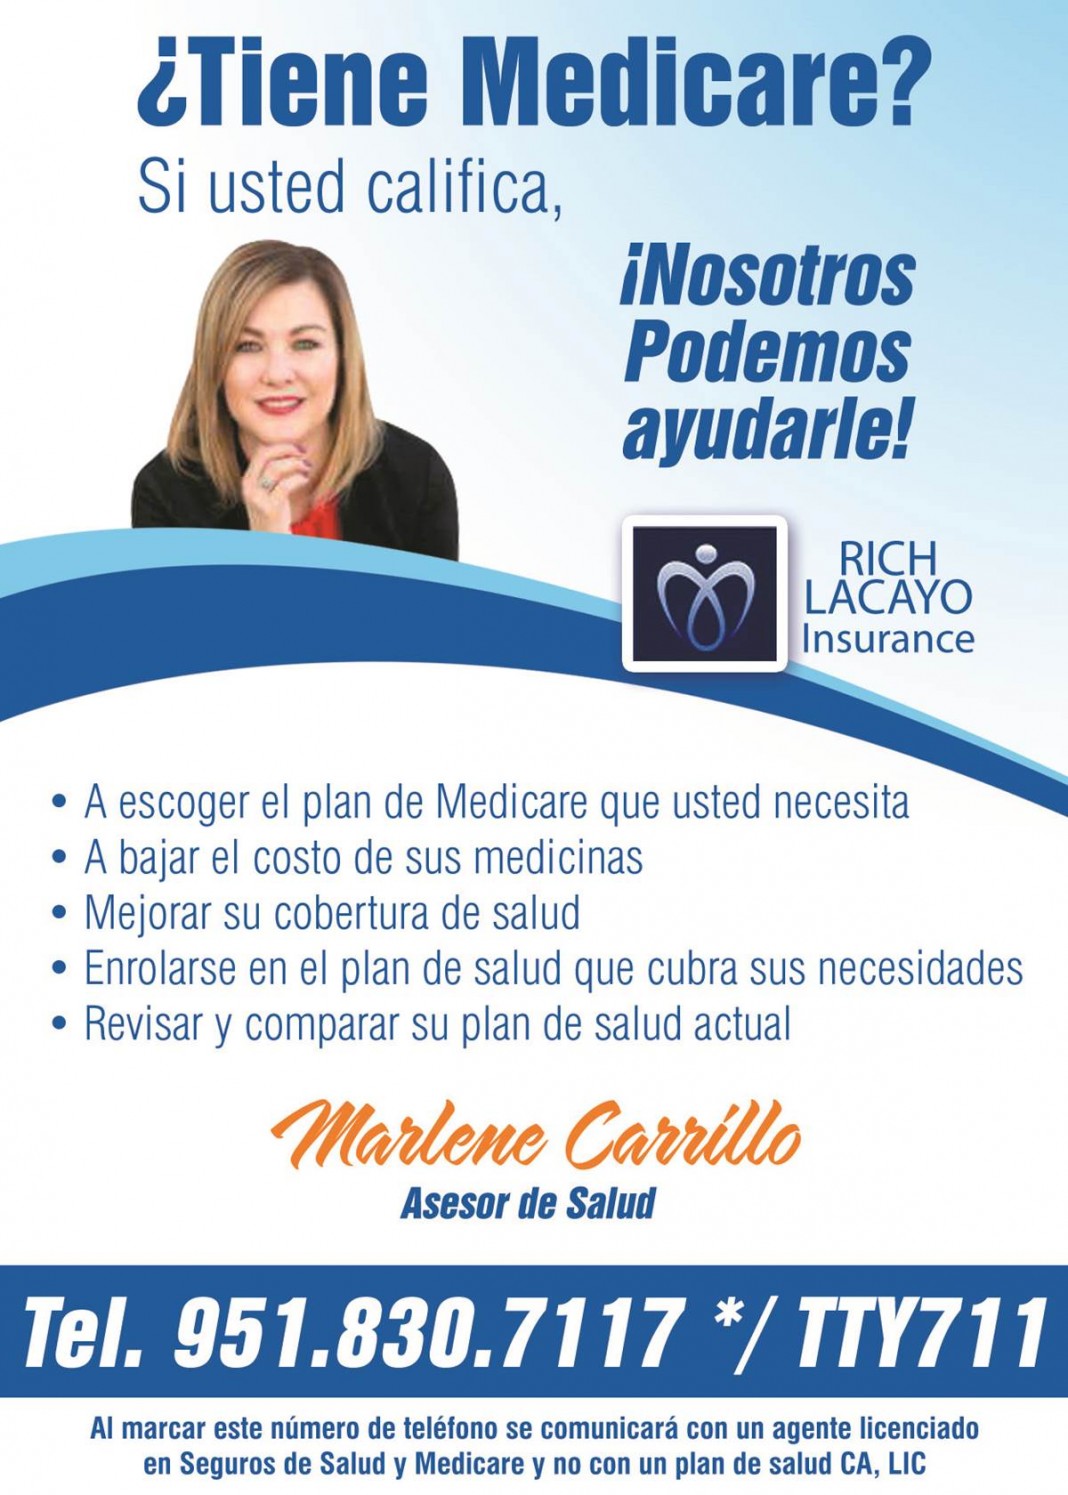 Rich Lacayo Insurance - Marlene Carrillo